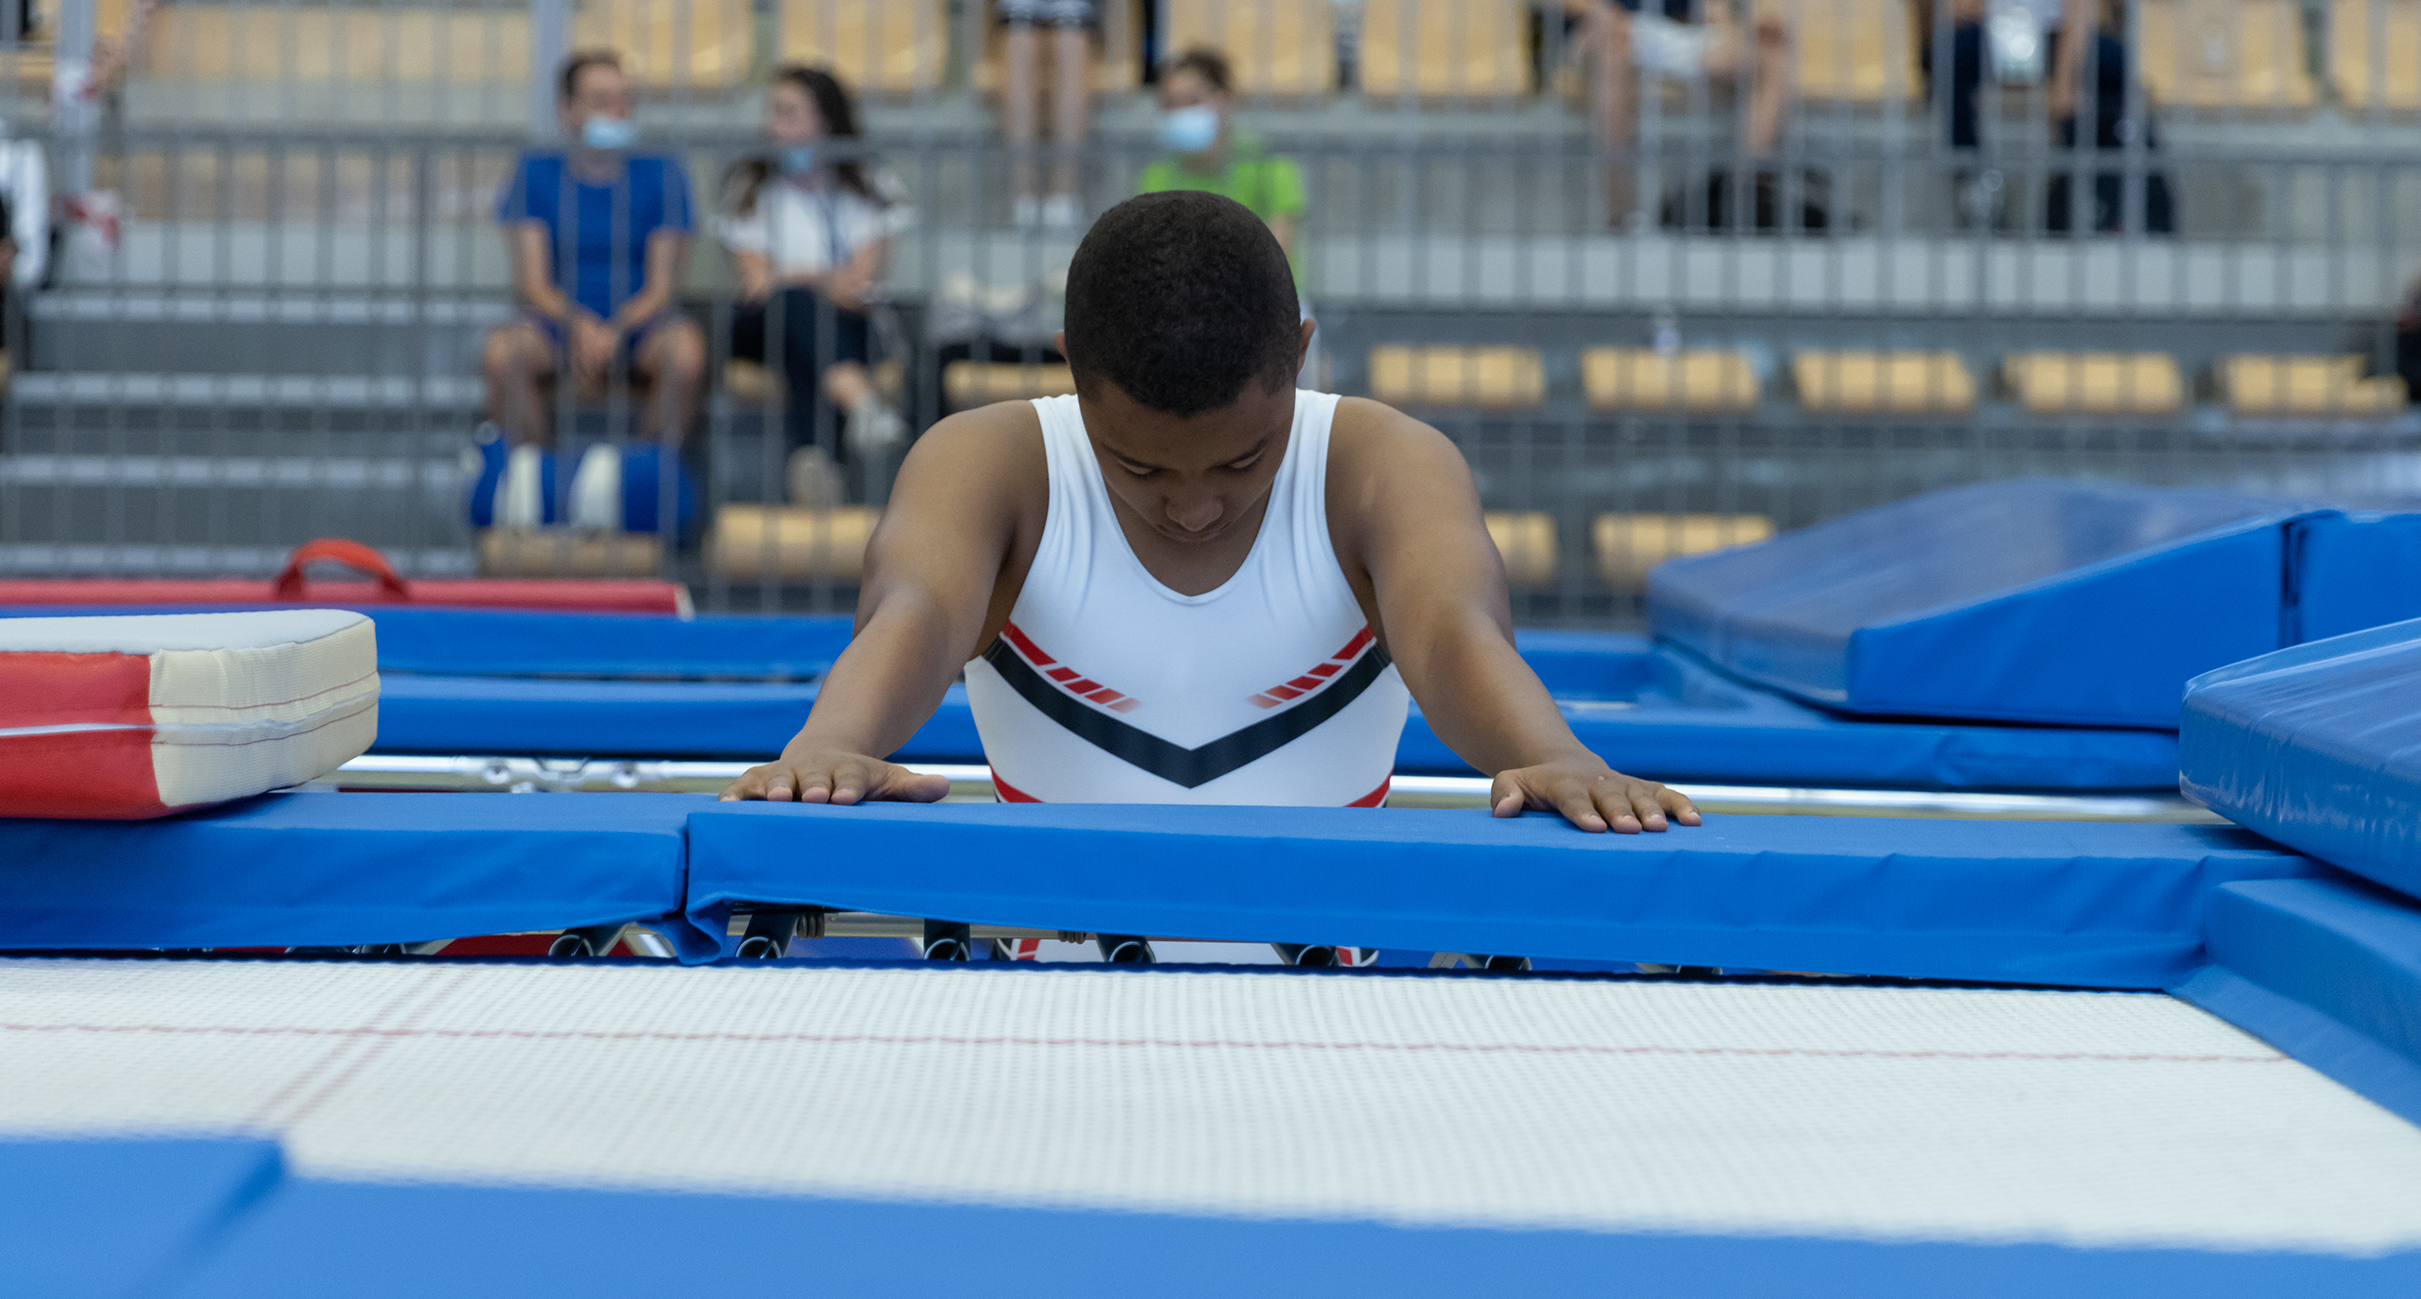 Le trampoline, un matériel indispensable en gymnastique artistique